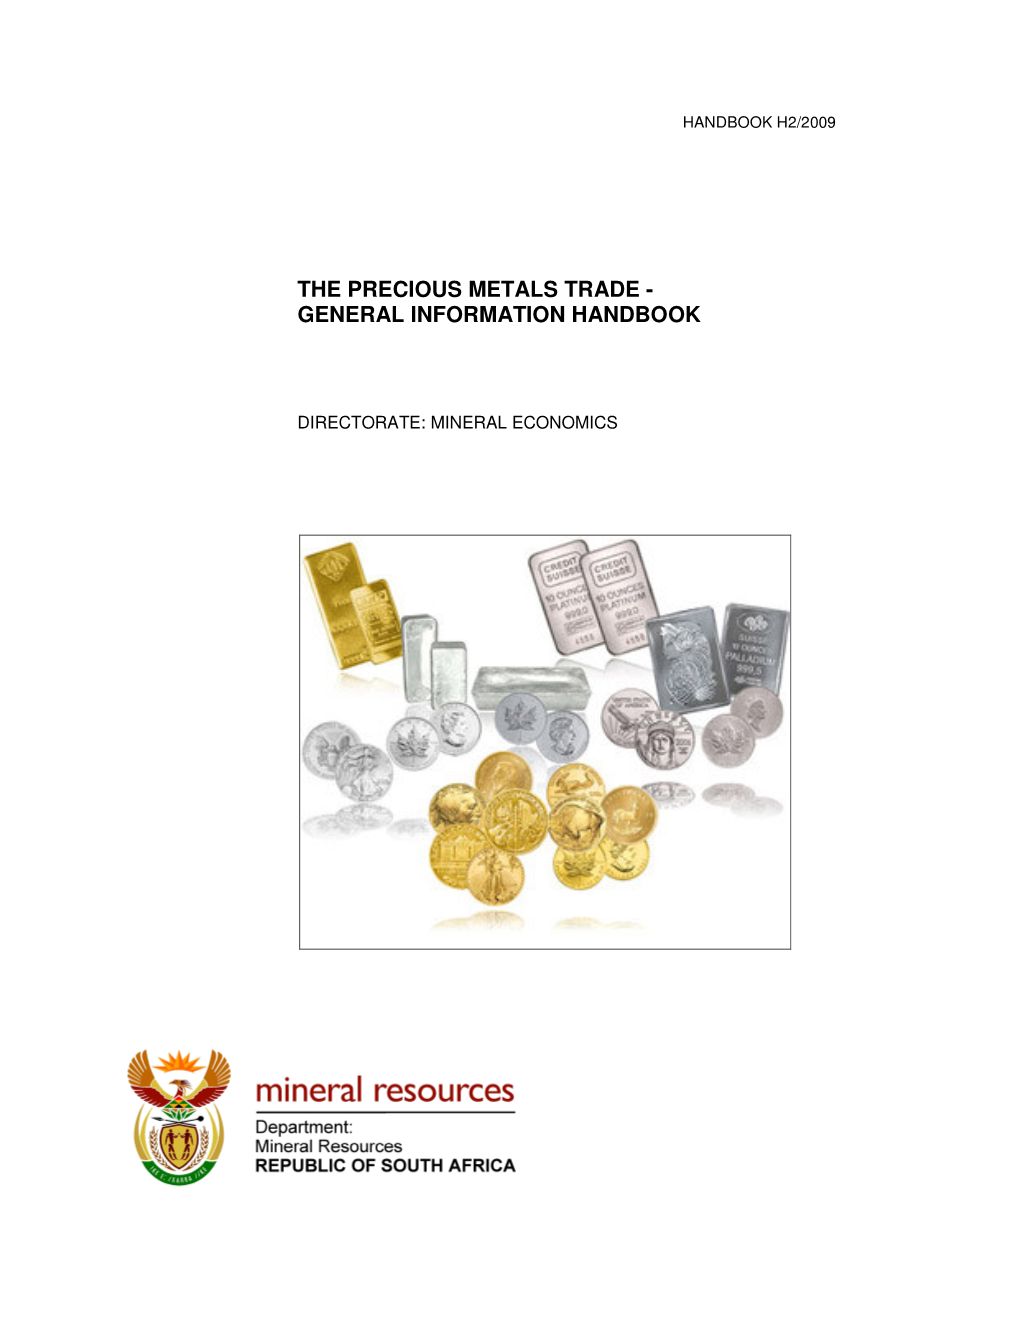 The Precious Metals Trade - General Information Handbook